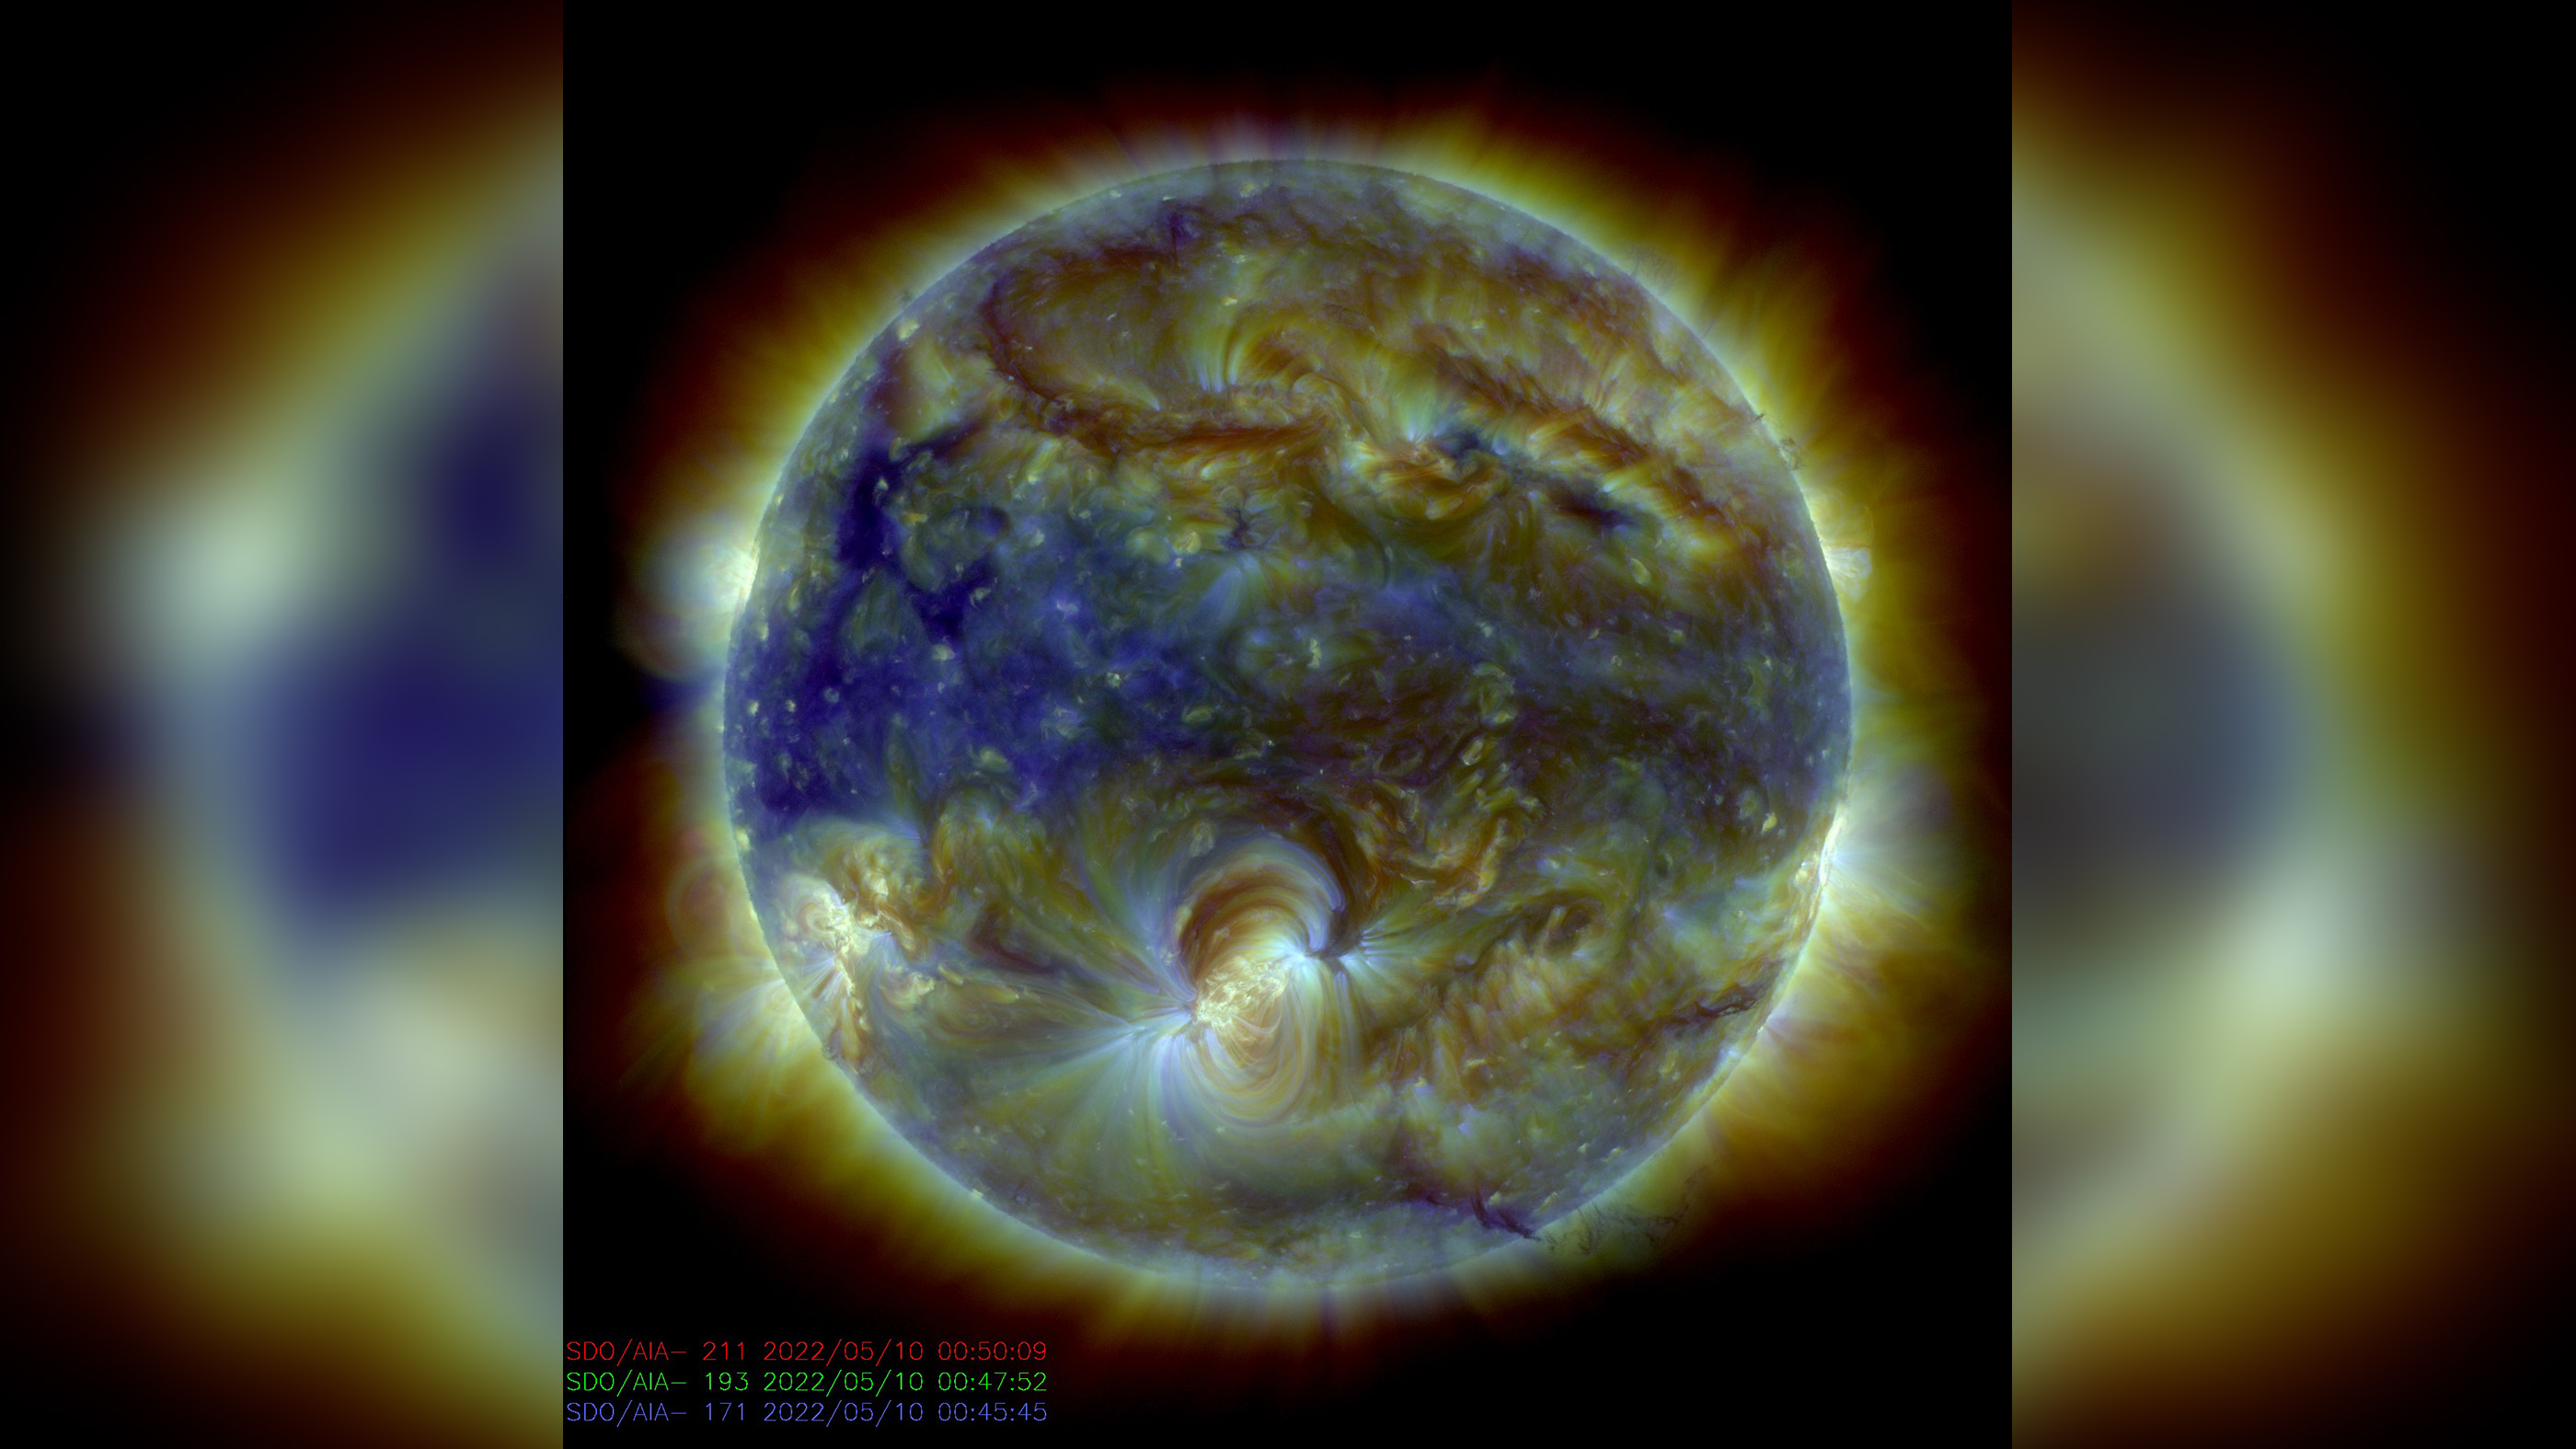 NASA's Solar Dynamics Observatory nam deze samengestelde foto van de zon op ongeveer tegelijkertijd met de krachtige zonnevlam.  AR3006 is zichtbaar in het onderste midden van de zonneschijf.